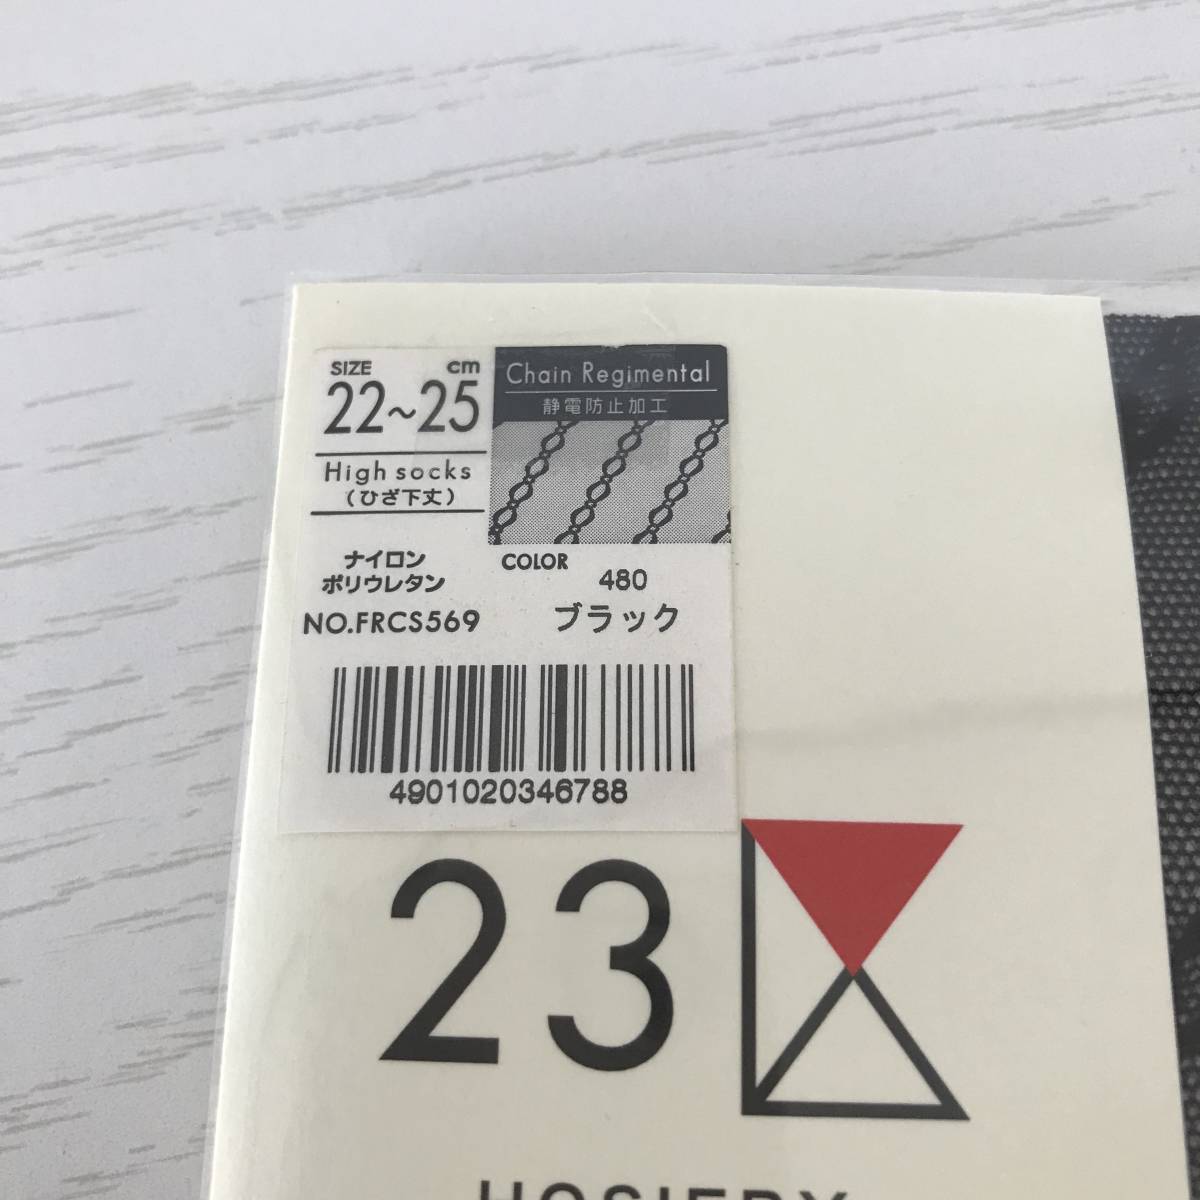  не использовался #23 район # женский гольфы # колени внизу длина # носки #atsugi* сделано в Японии #22~25. свободный размер # чулки способ 